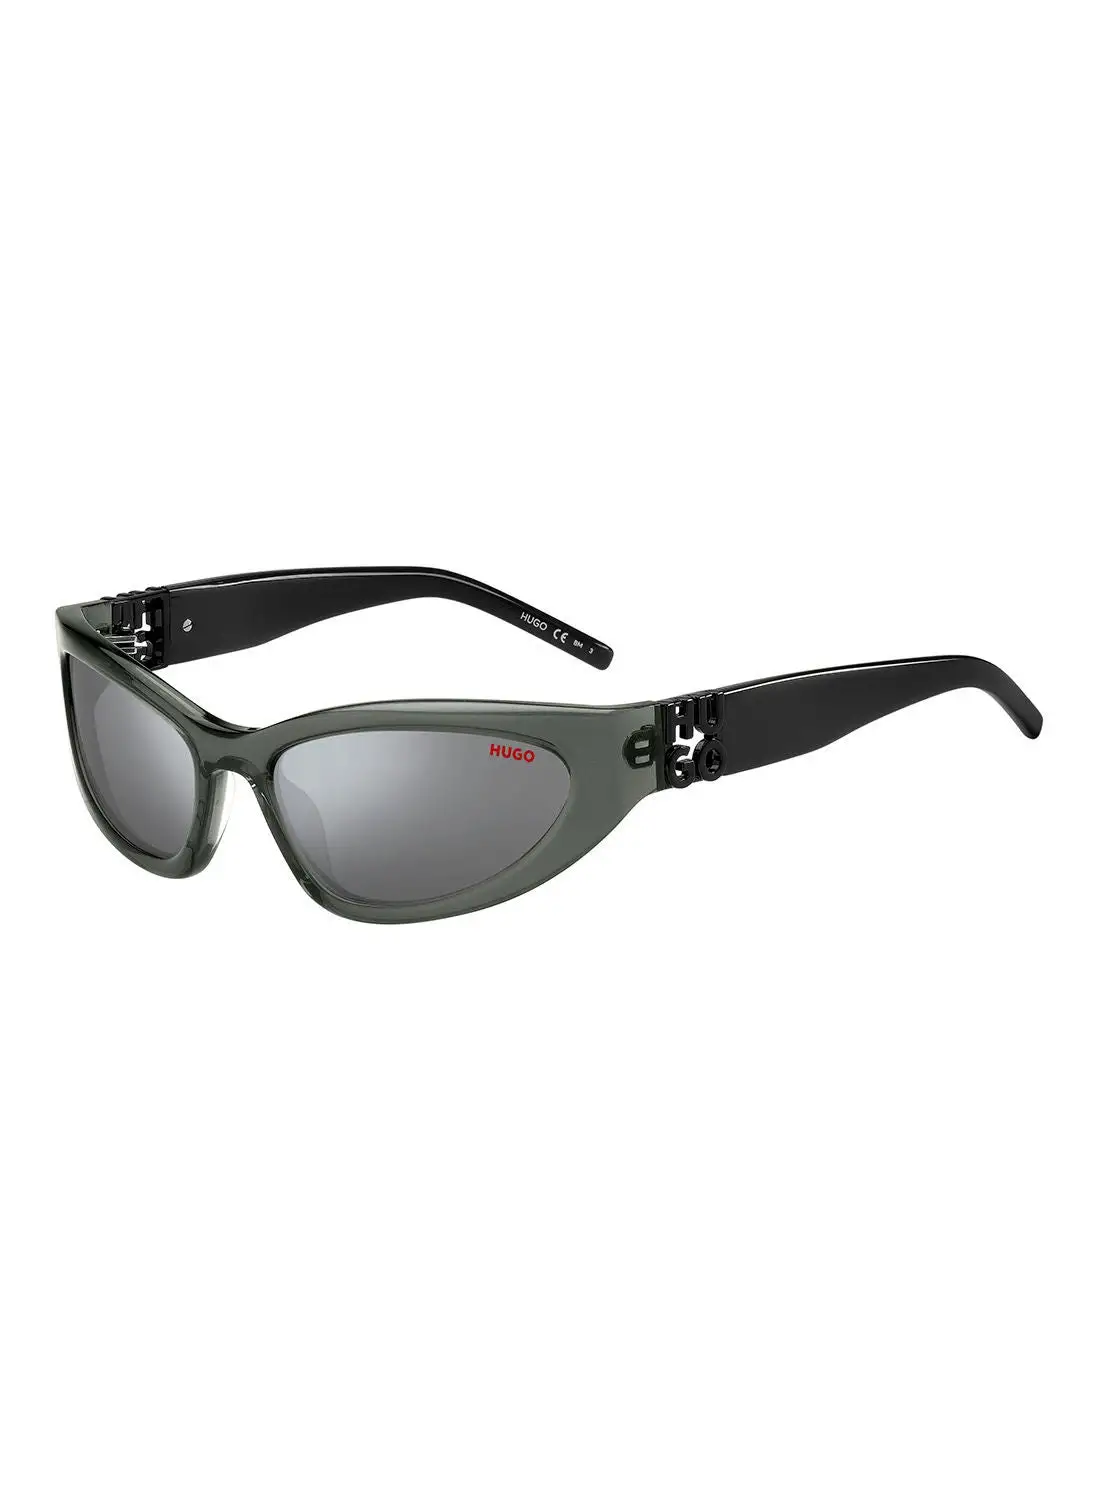 HUGO Men's UV Protection Cat Eye Sunglasses - Hg 1255/S Grey 59 - Lens Size: 59 Mm